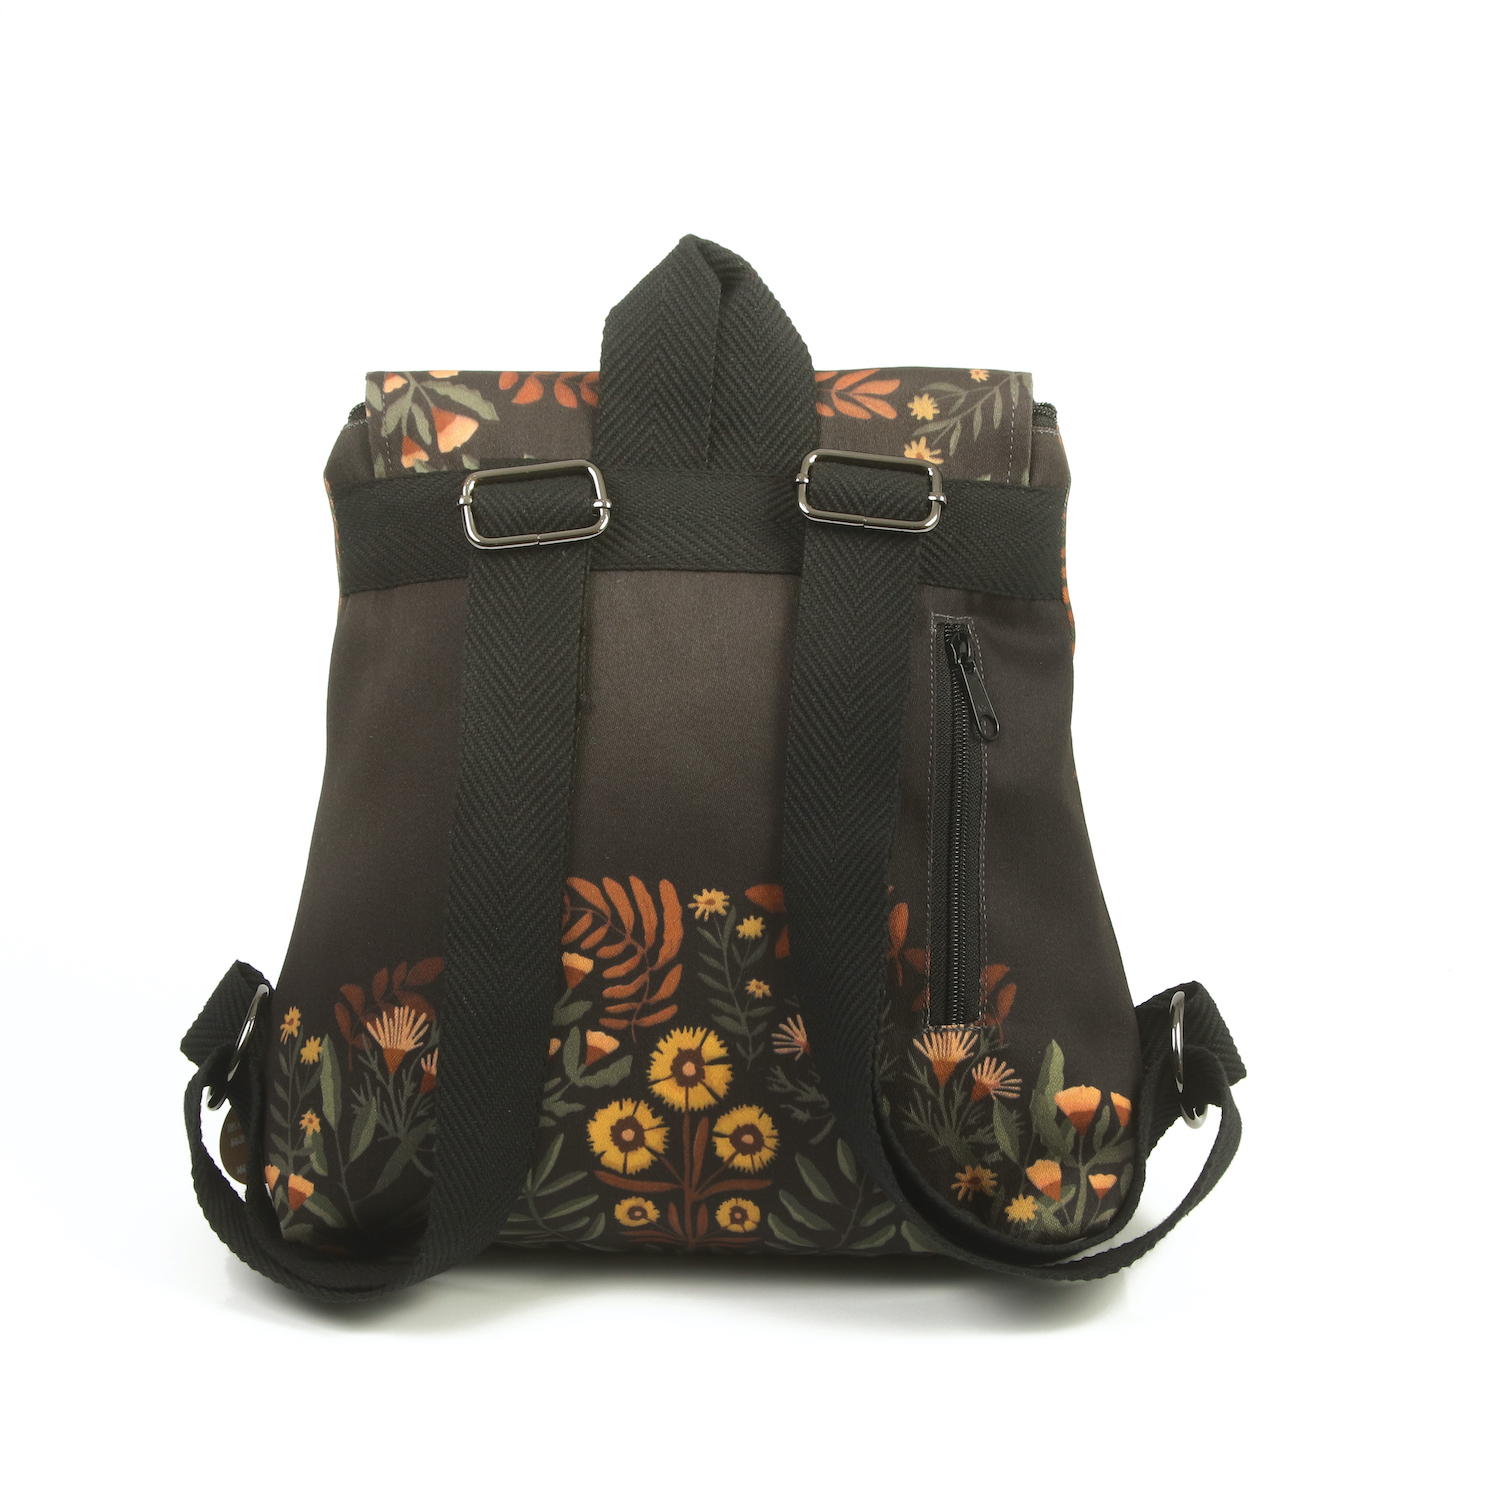 LazyDayz Designs Backpack γυναικείος σάκος πλάτης χειροποίητος bb0305c